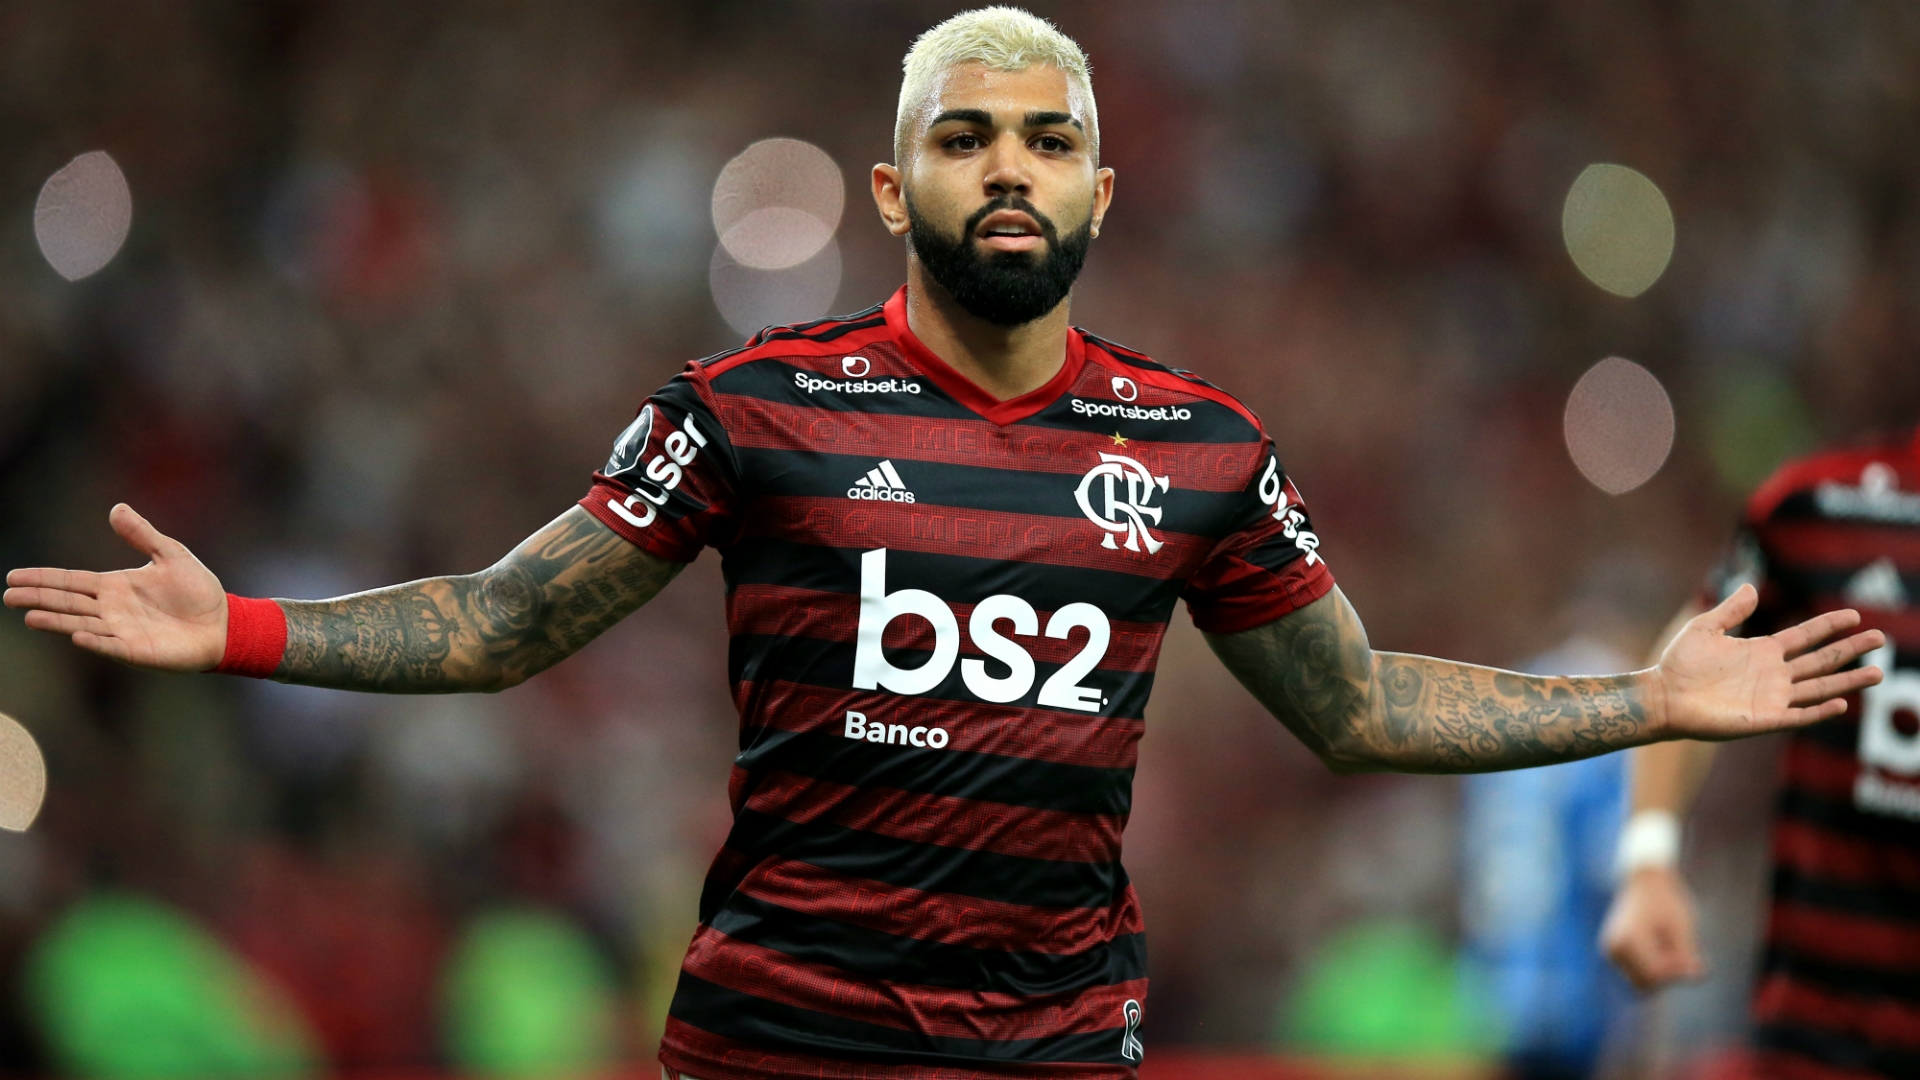 Flamengo 5 0 Gremio (6 1 Agg): Gabriel Gabigol Leads Hosts